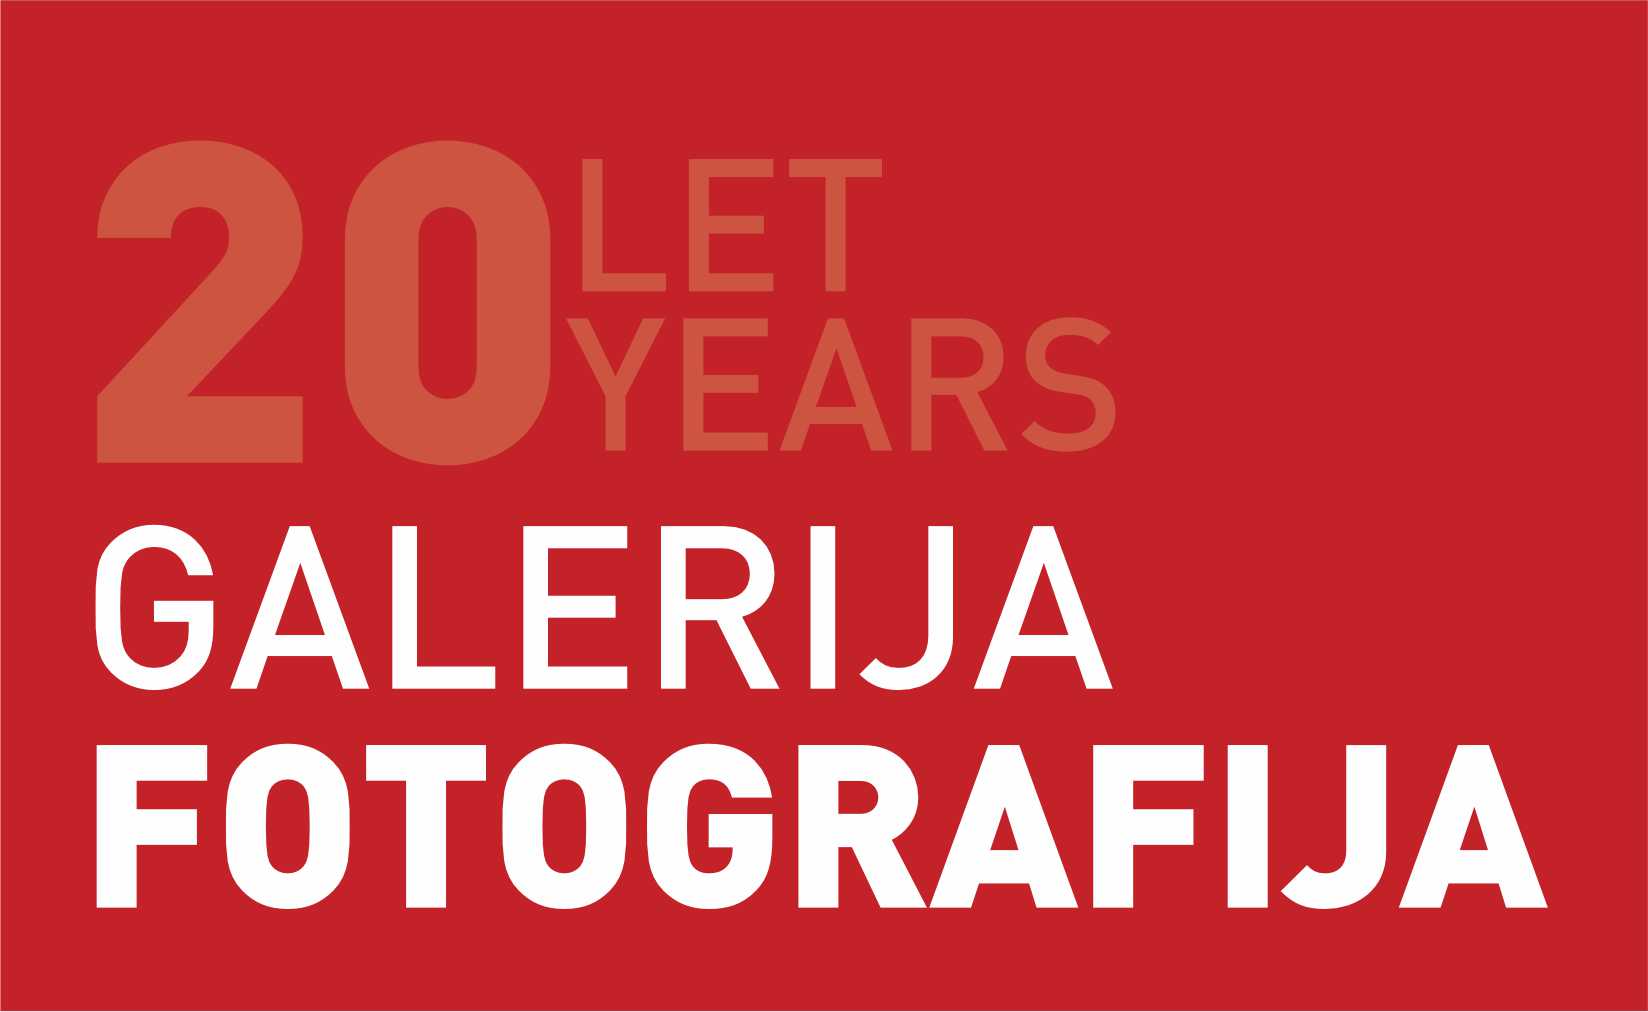 Galerija Fotografija company logo